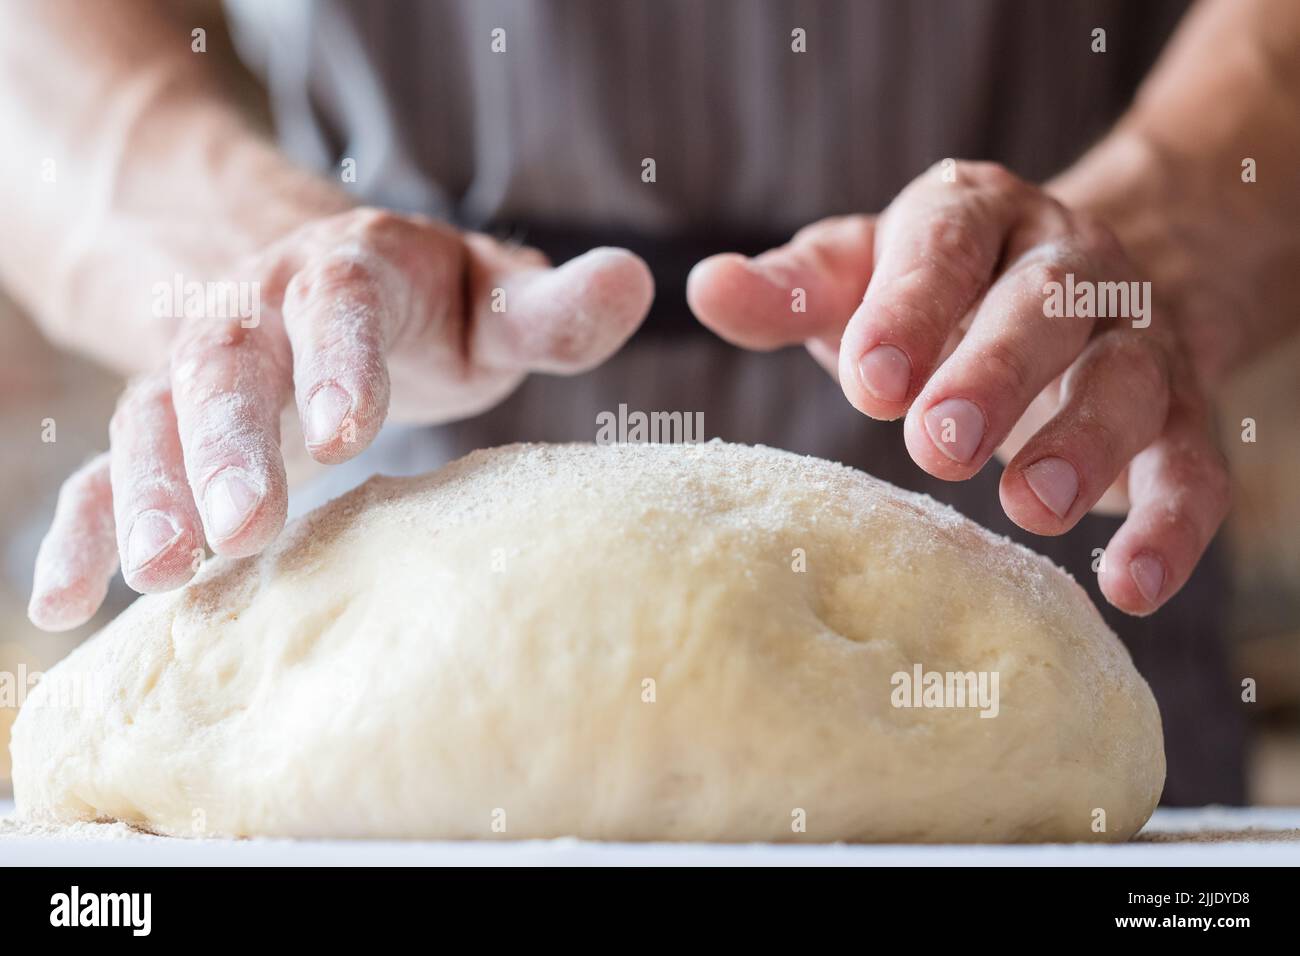 pain de cuisine homme culinaire mains pétrissez la pâte Banque D'Images